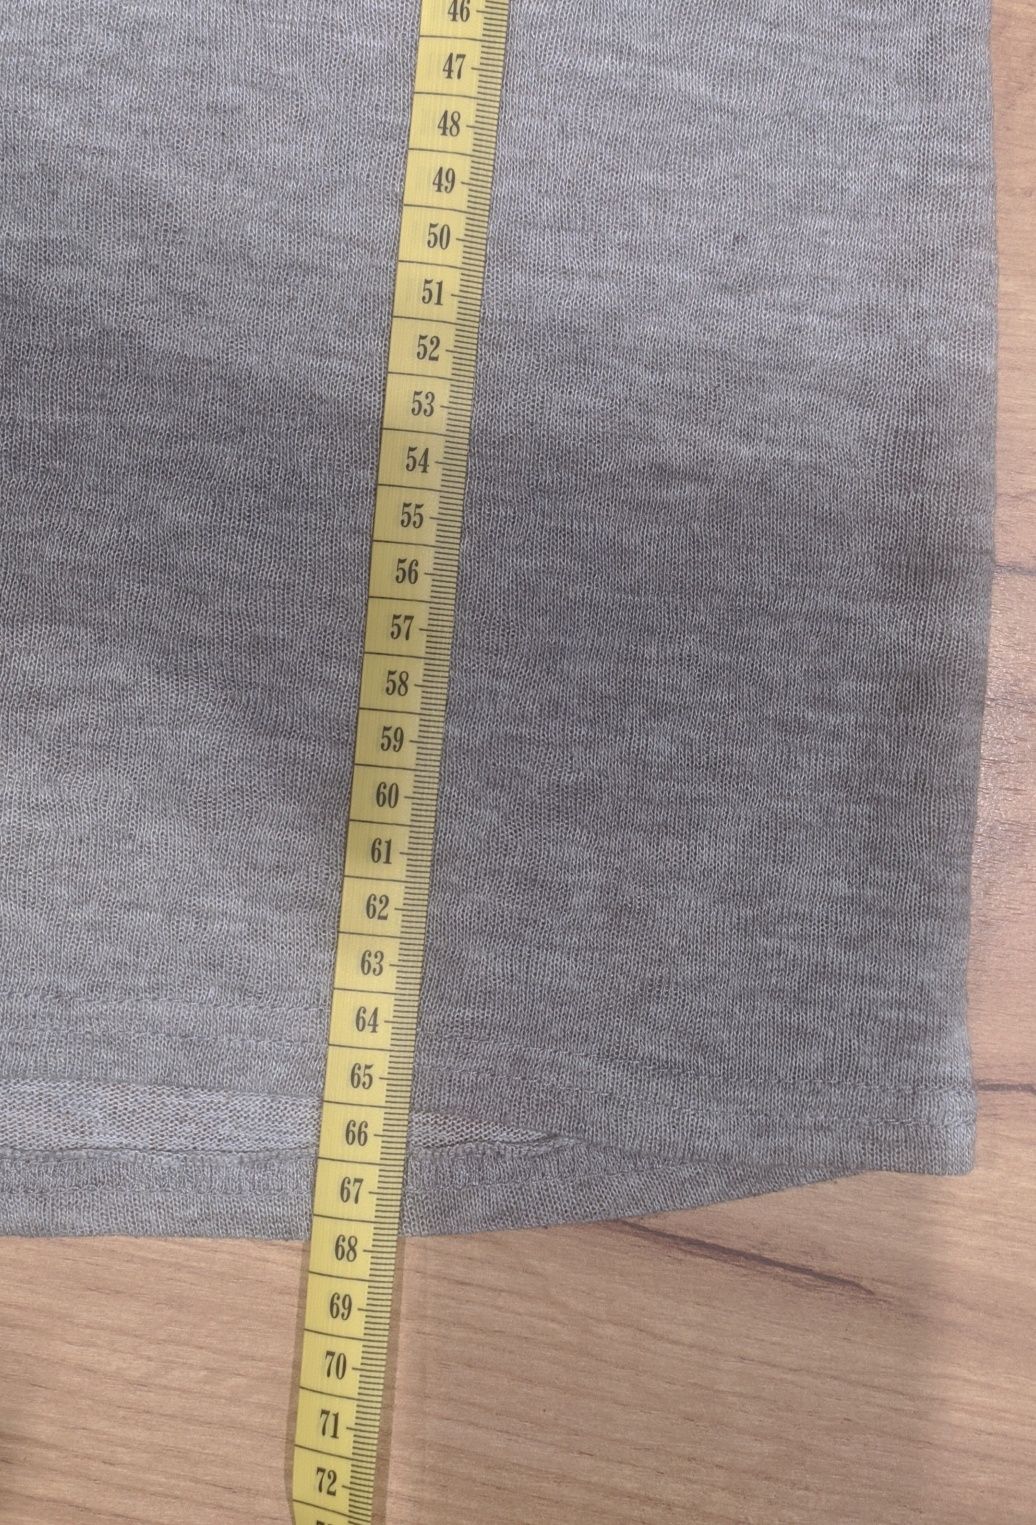 Sweterek szary cienki ze wstawką ażurową rozmiar S sweter bluzka